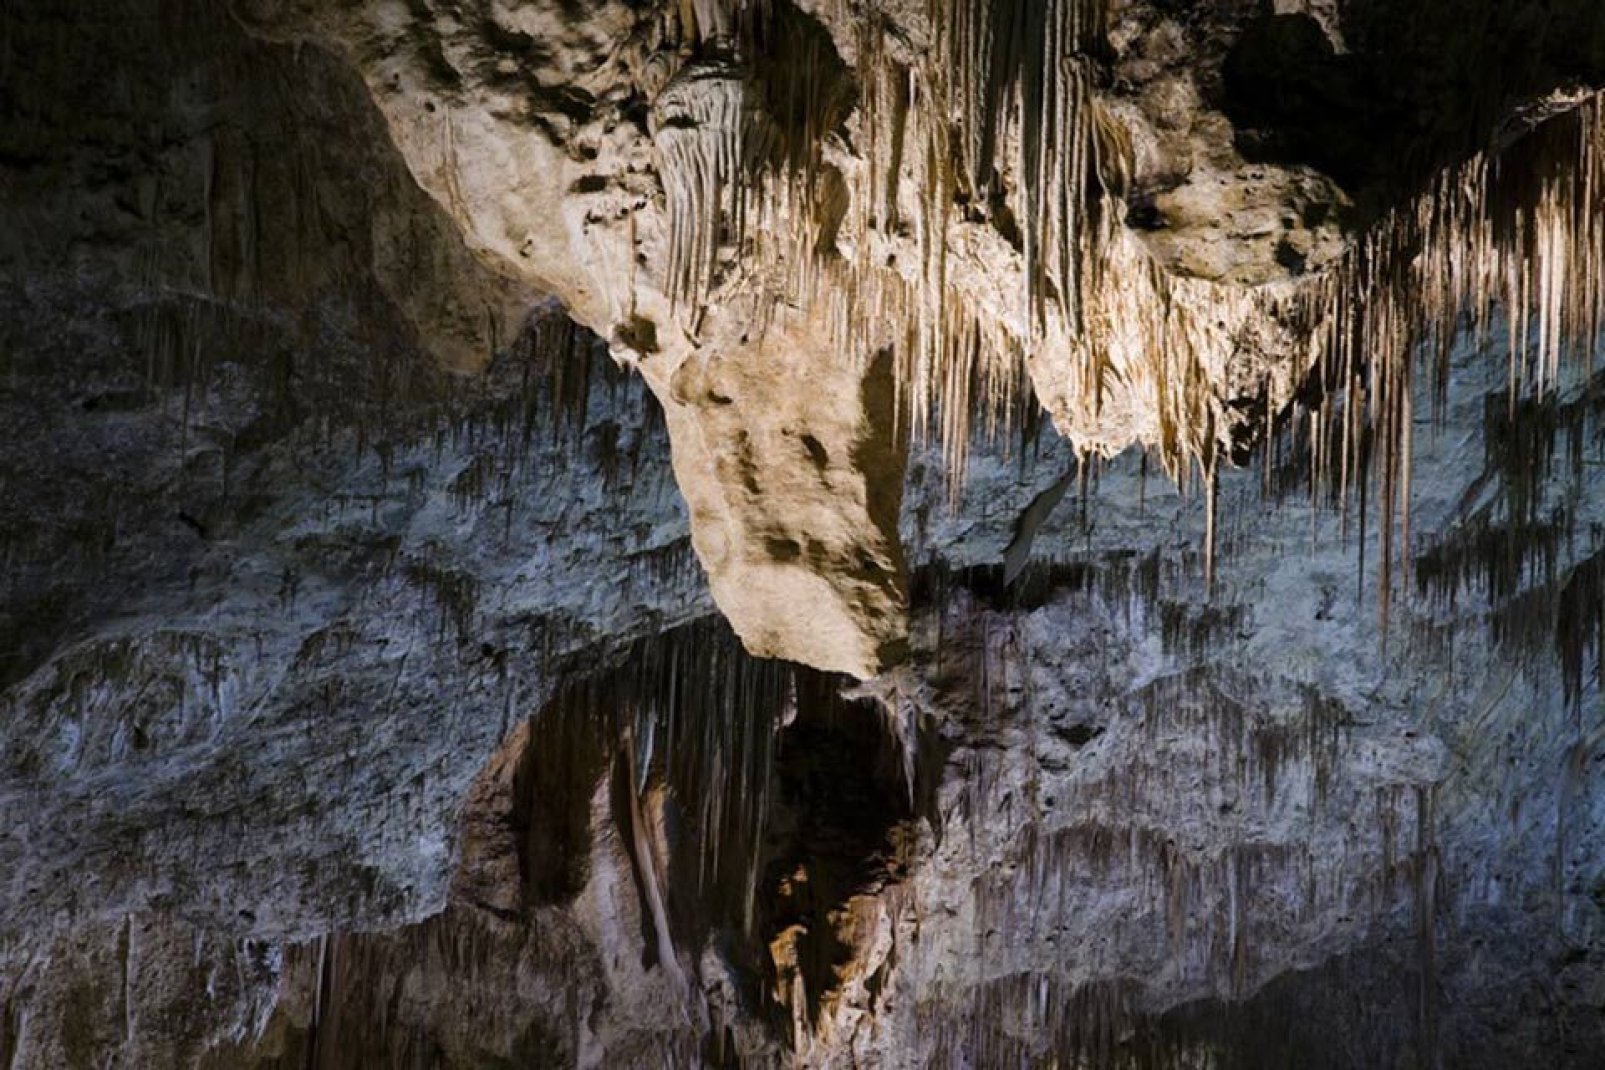 En la República Checa se encuentran numerosas grutas de sal. Sus beneficios para la salud son reconocidos. Incluso se recomienda llevar a los niños.